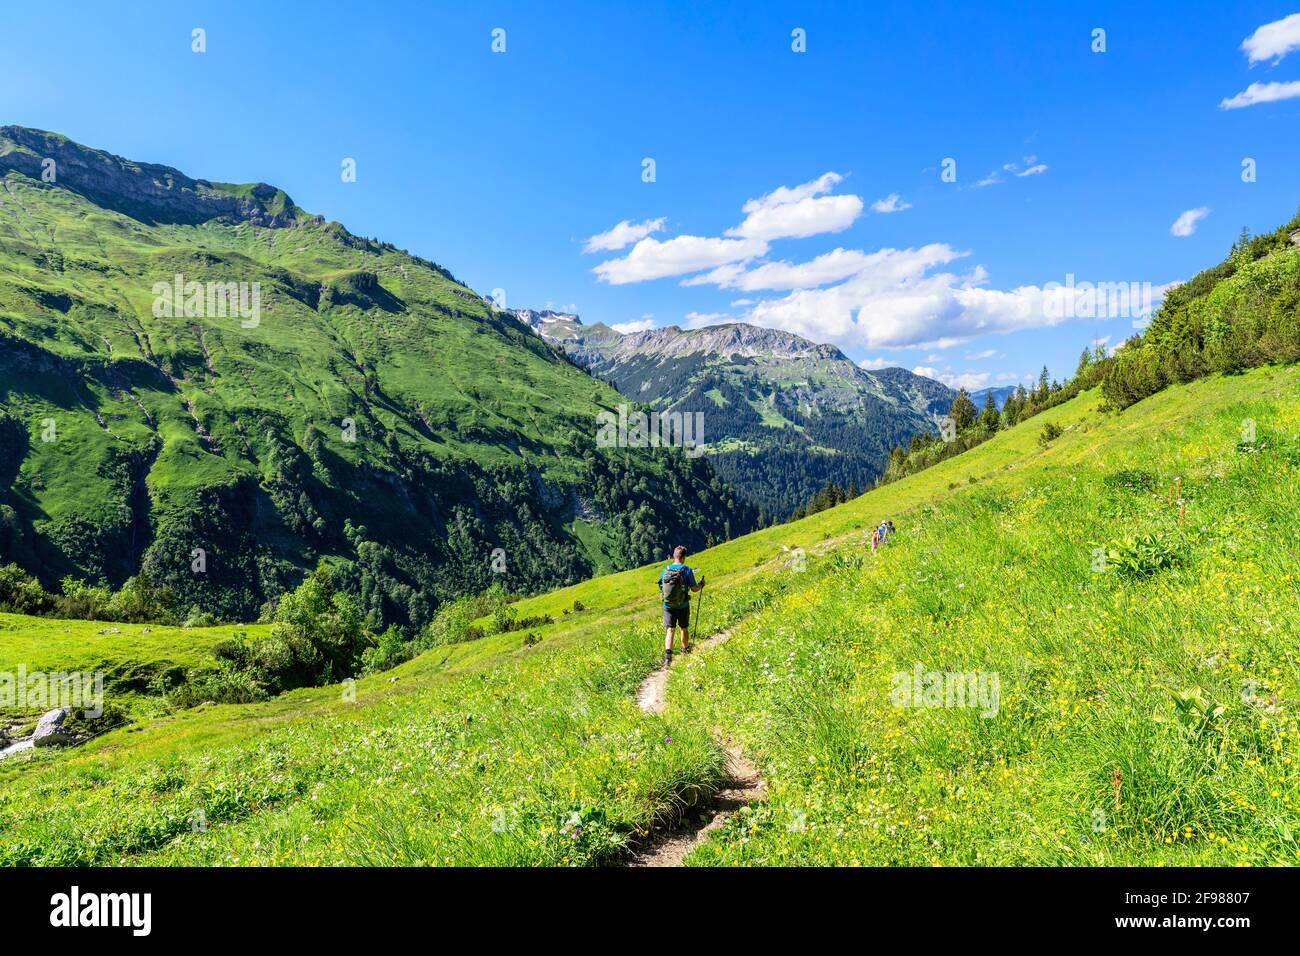 Escursionisti in un paesaggio alpino di montagna con prati verdi e boschi in una soleggiata giornata estiva. Alpi di Allgäu, Baviera, Germania Foto Stock